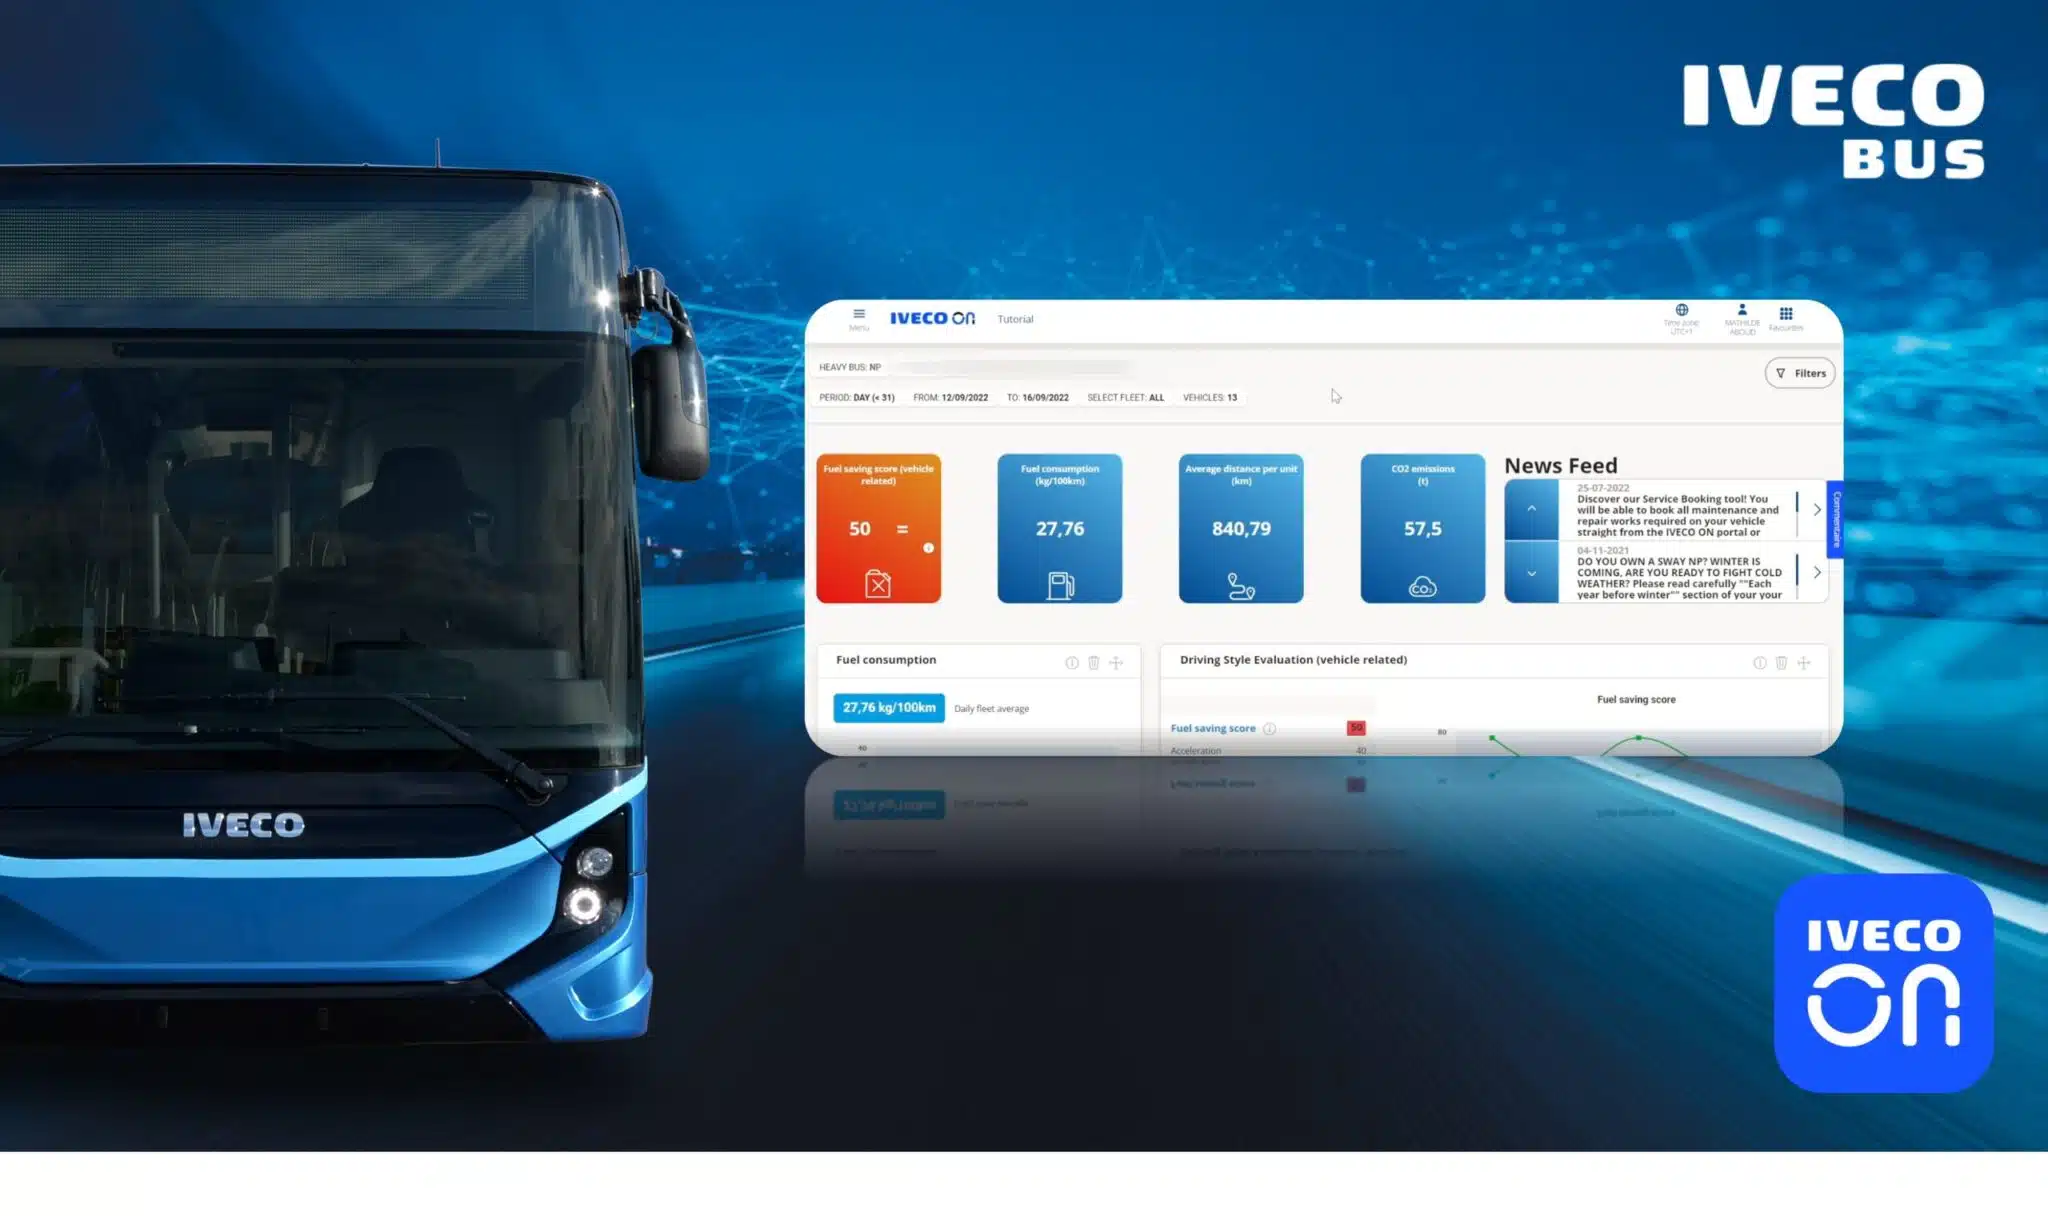 ETV Truck | IVECO ON: Új digitális szolgáltatások világa az IVECO BUS flották számára